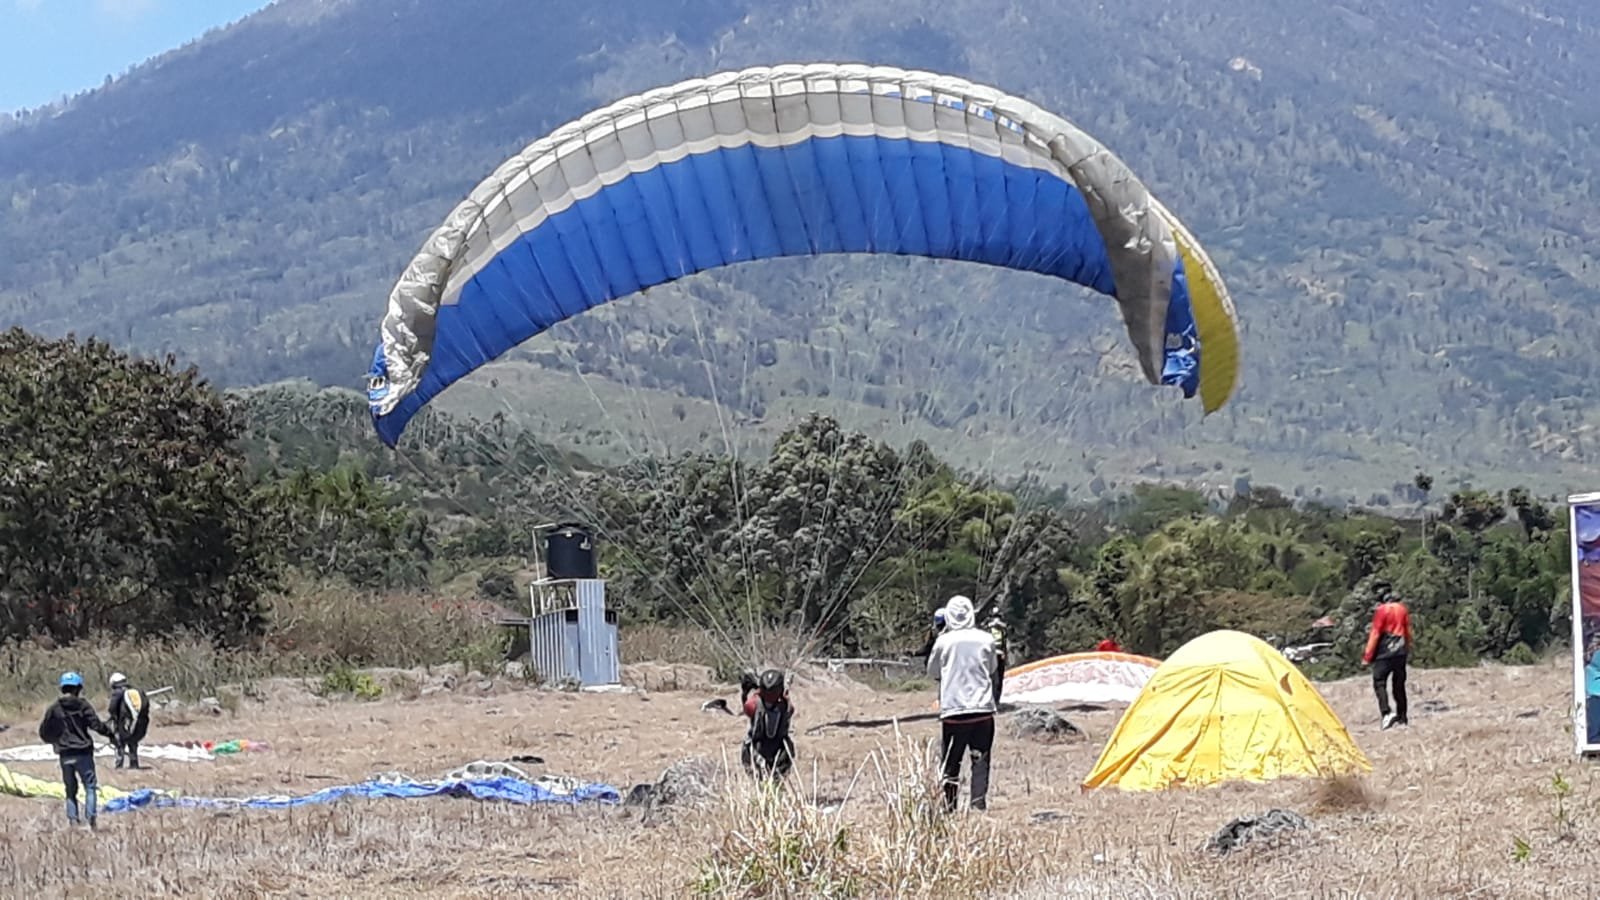 Sembalun Paragliding Festival Fun and Fly Kembali Digelar di Bukit Lawang